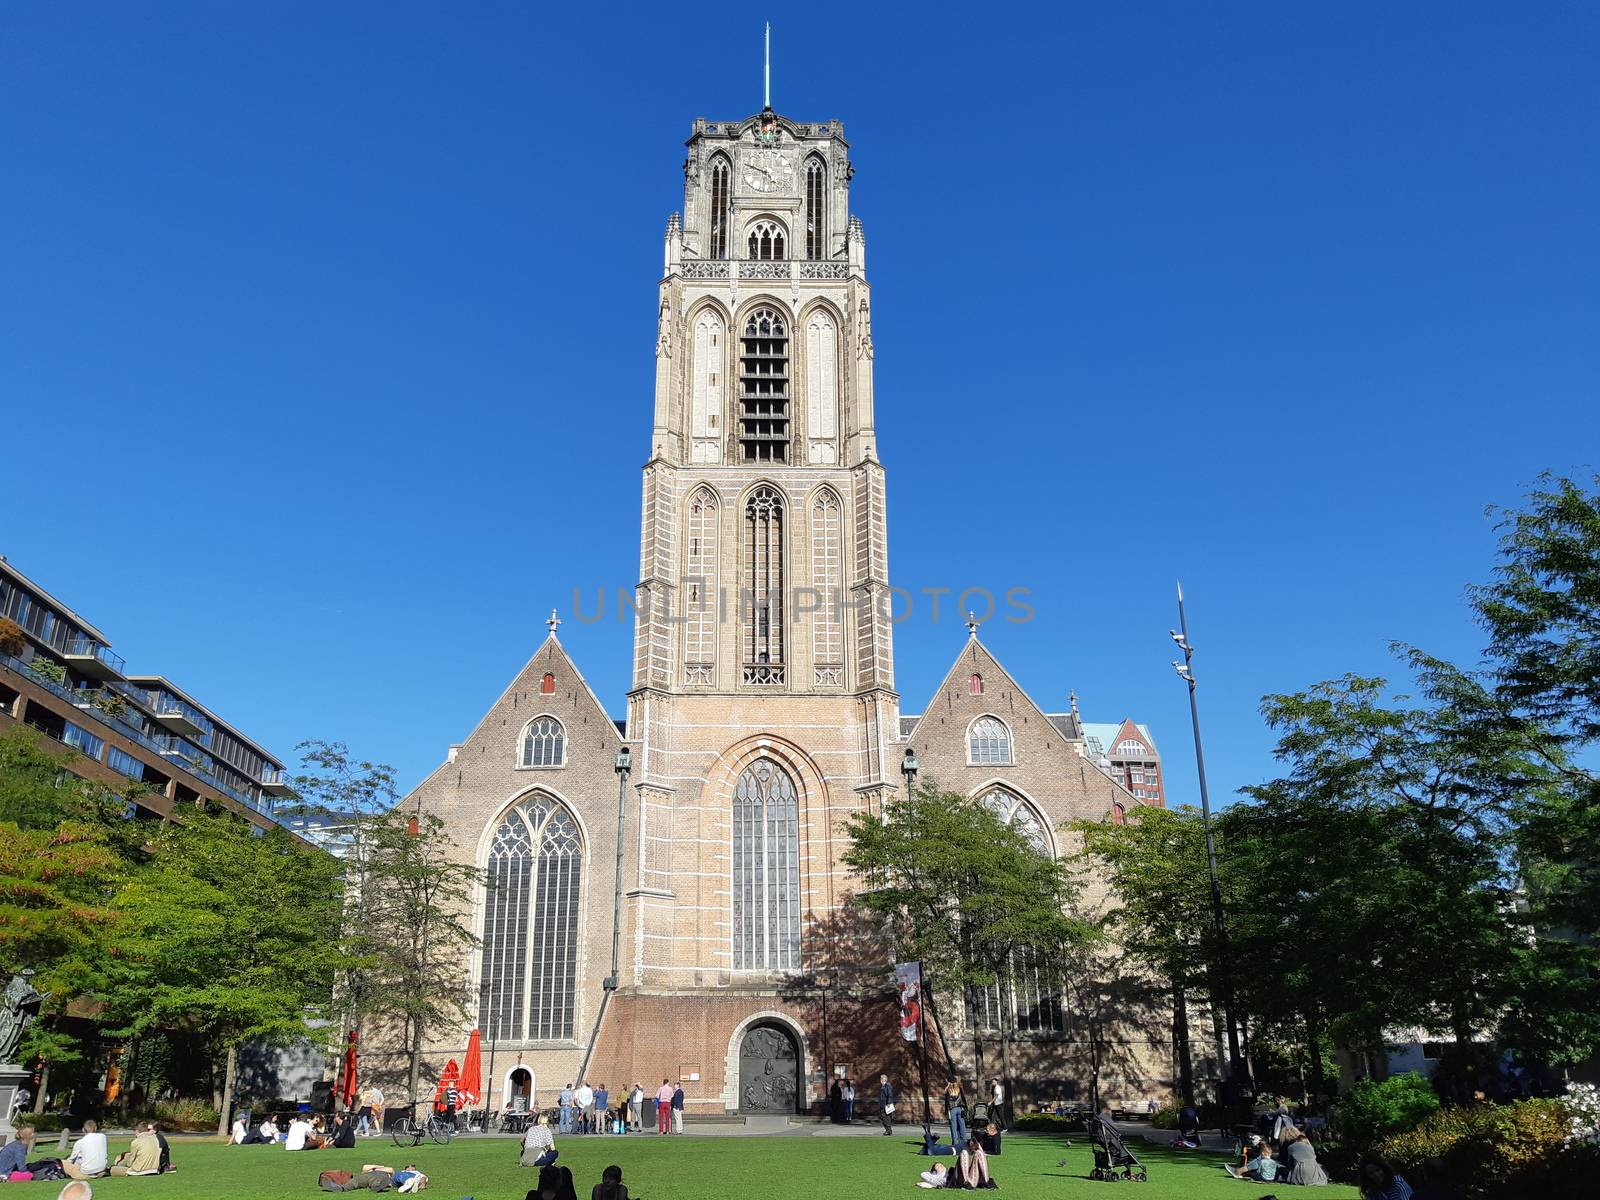 View on the Laurenskerk (Laurens Church) with people enjoying the sun on the Grotekerkplein